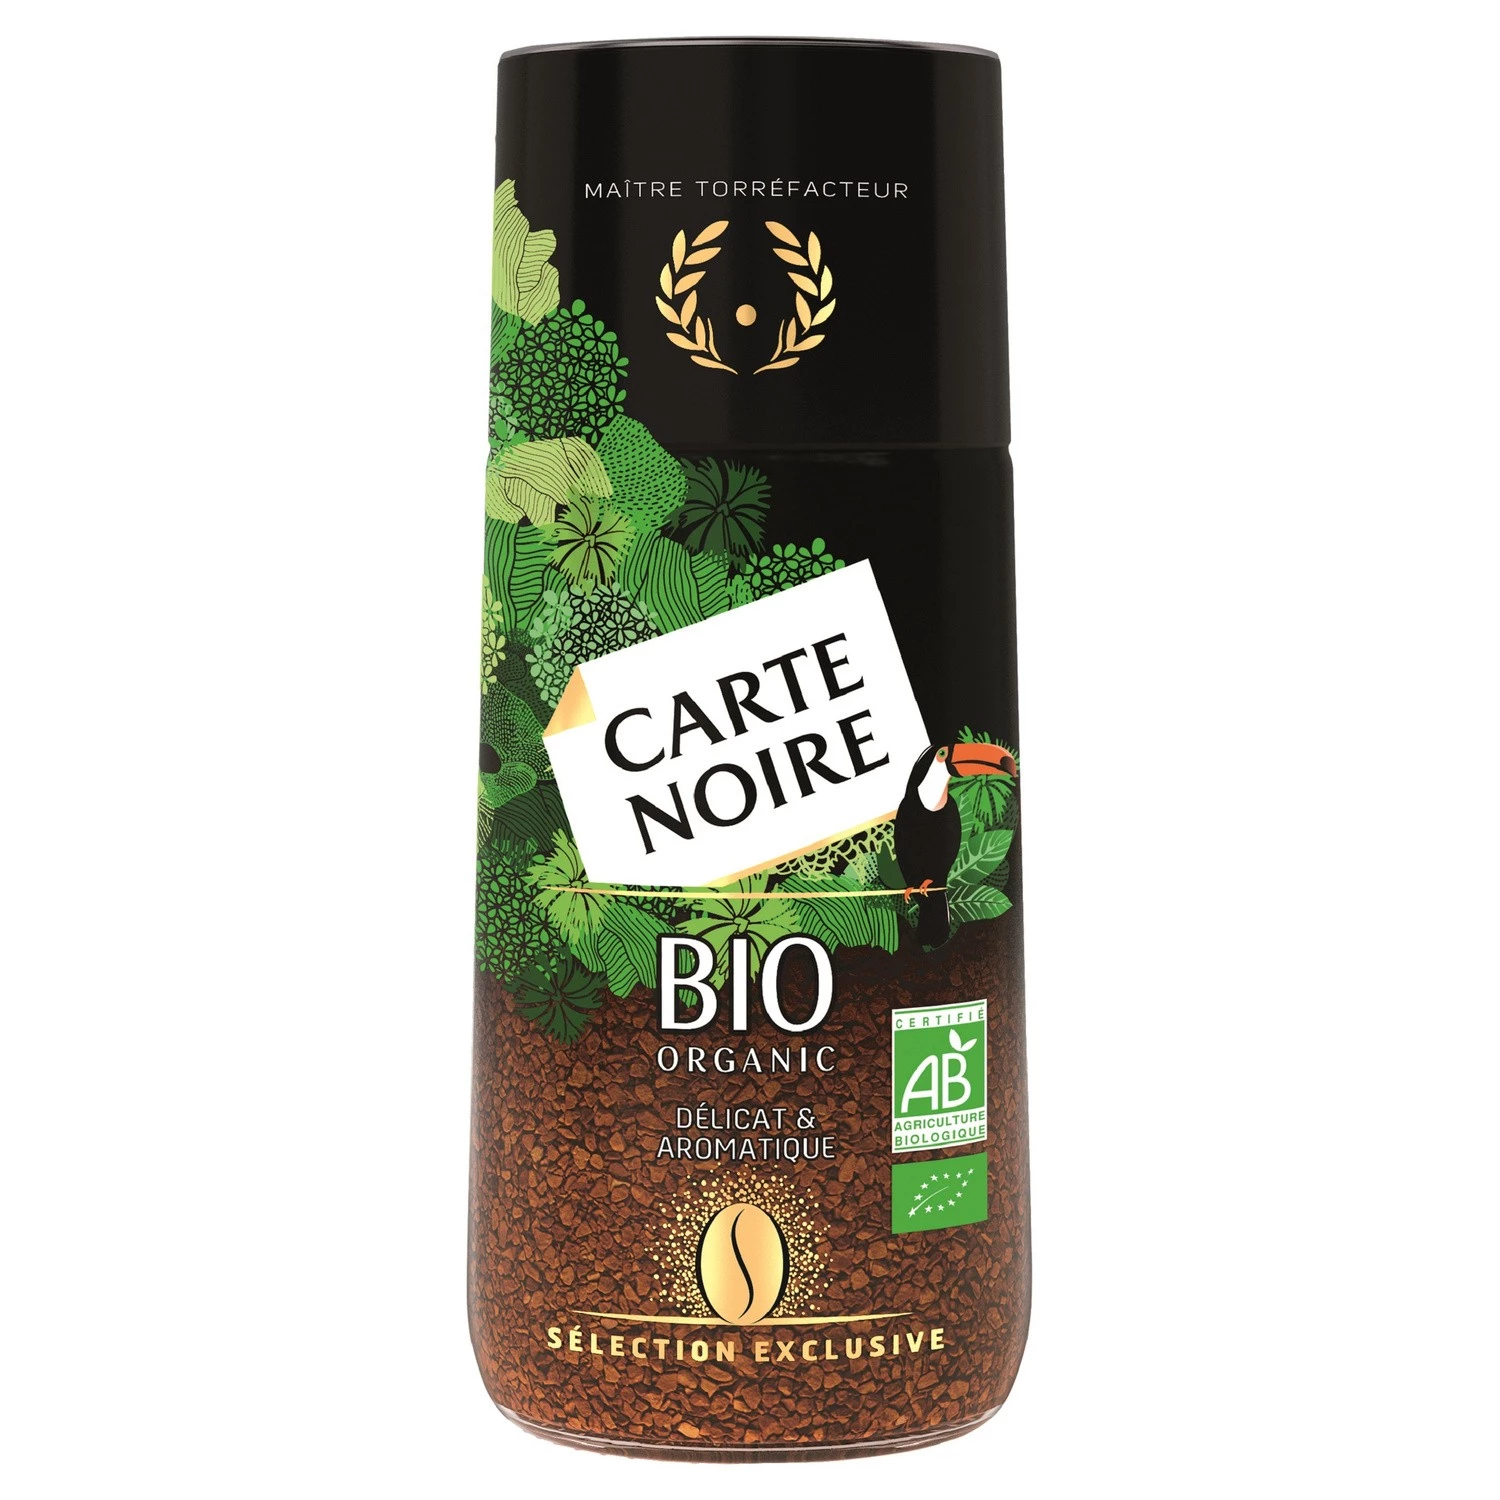 Löslicher Kaffee, exklusive Auswahl, Bio, 95 g - CARTE NOIRE